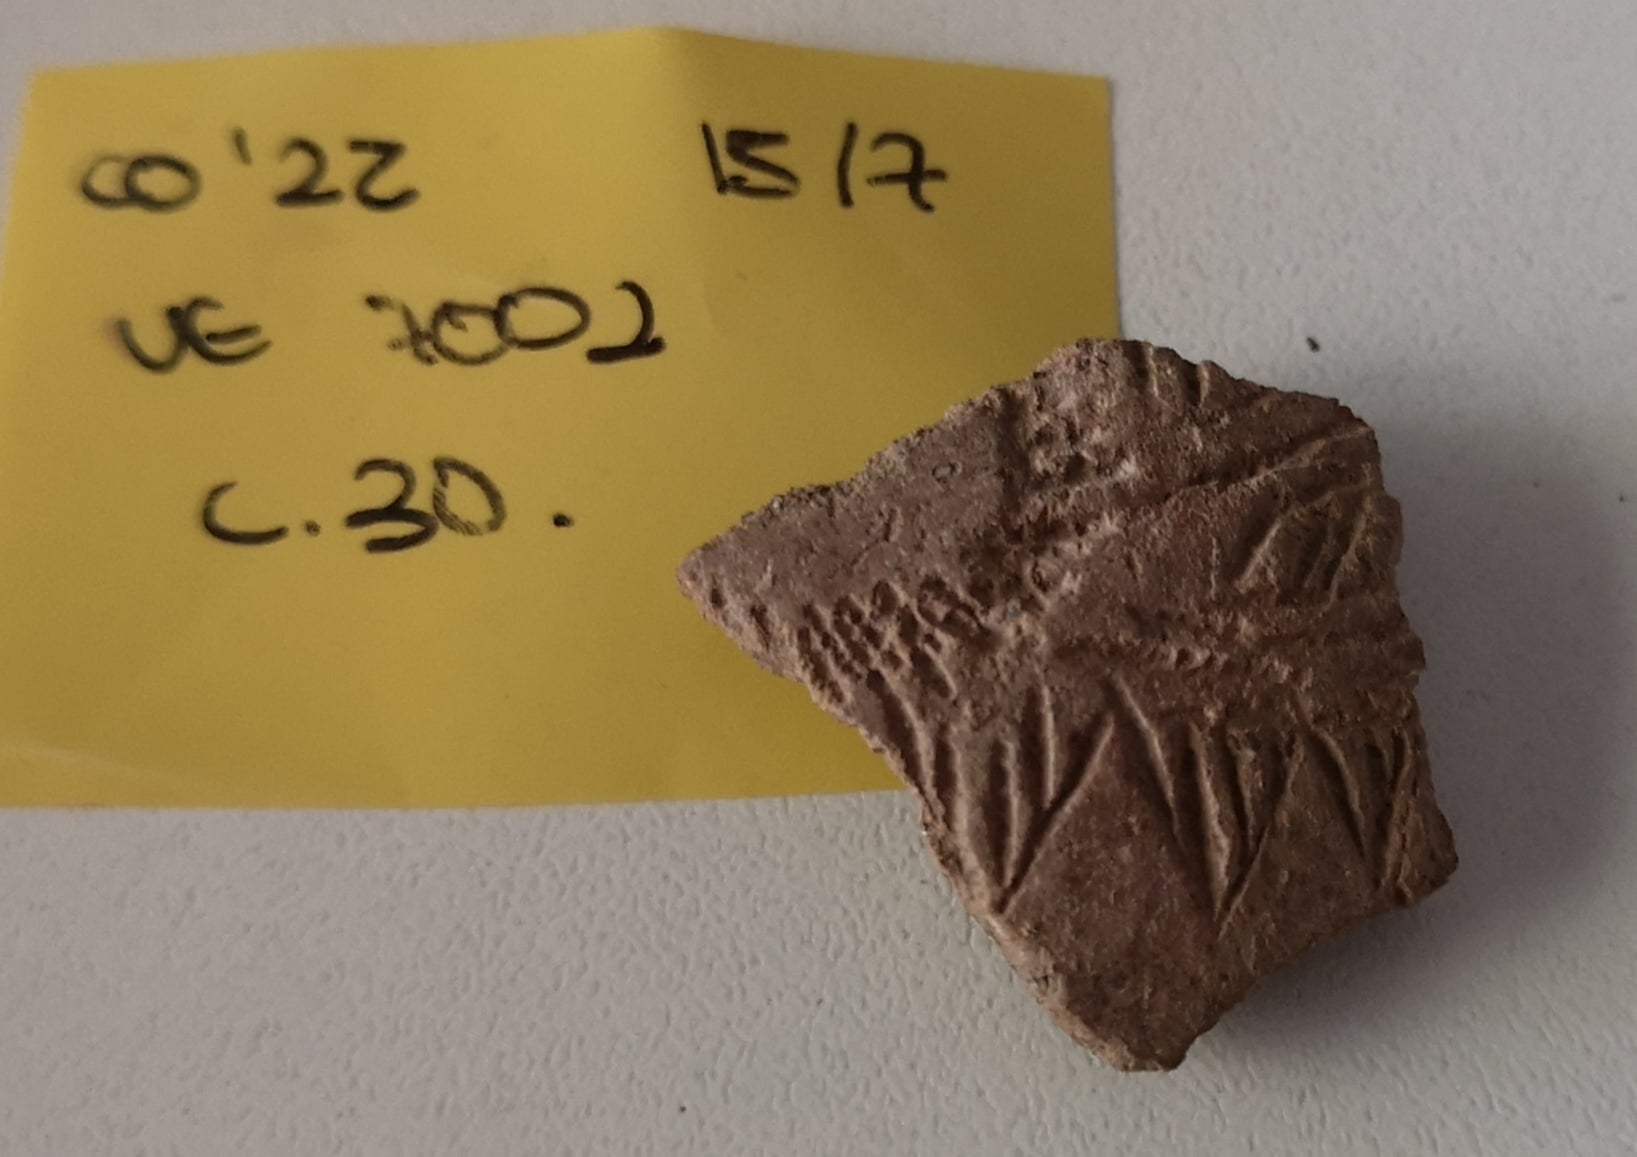 Arqueólogos del MARQ hallan relevantes cerámicas del Neolítico en una grieta de la Cova de l’Or de Beniarrés